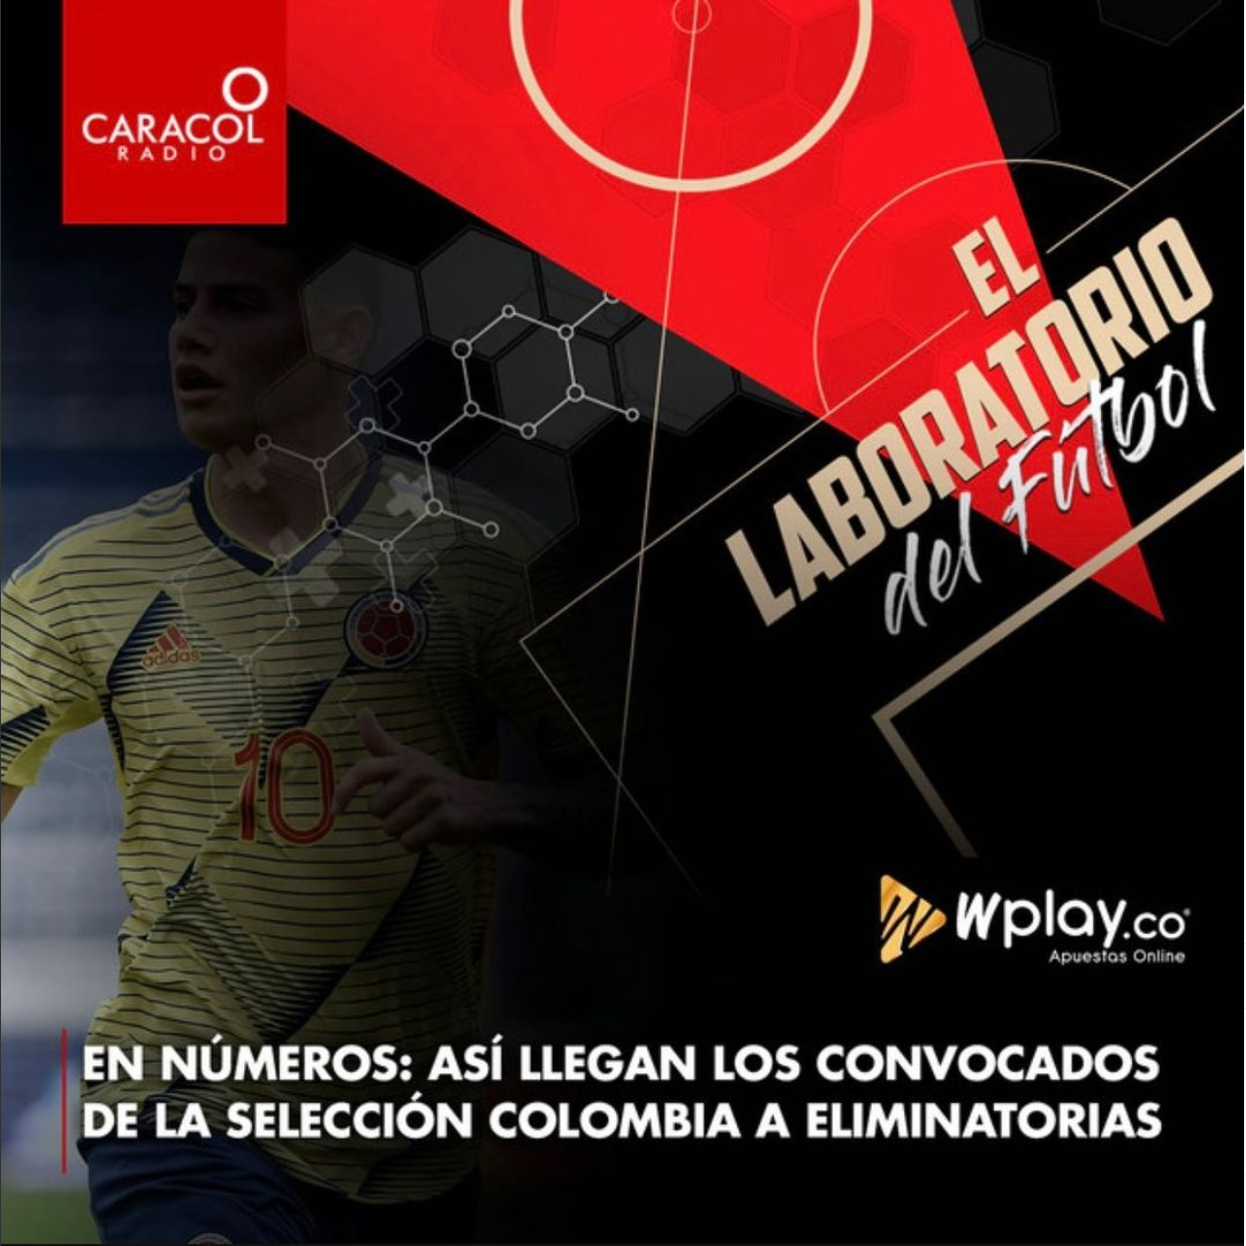 En números: Así llegan los convocados de Selección Colombia a Eliminatorias